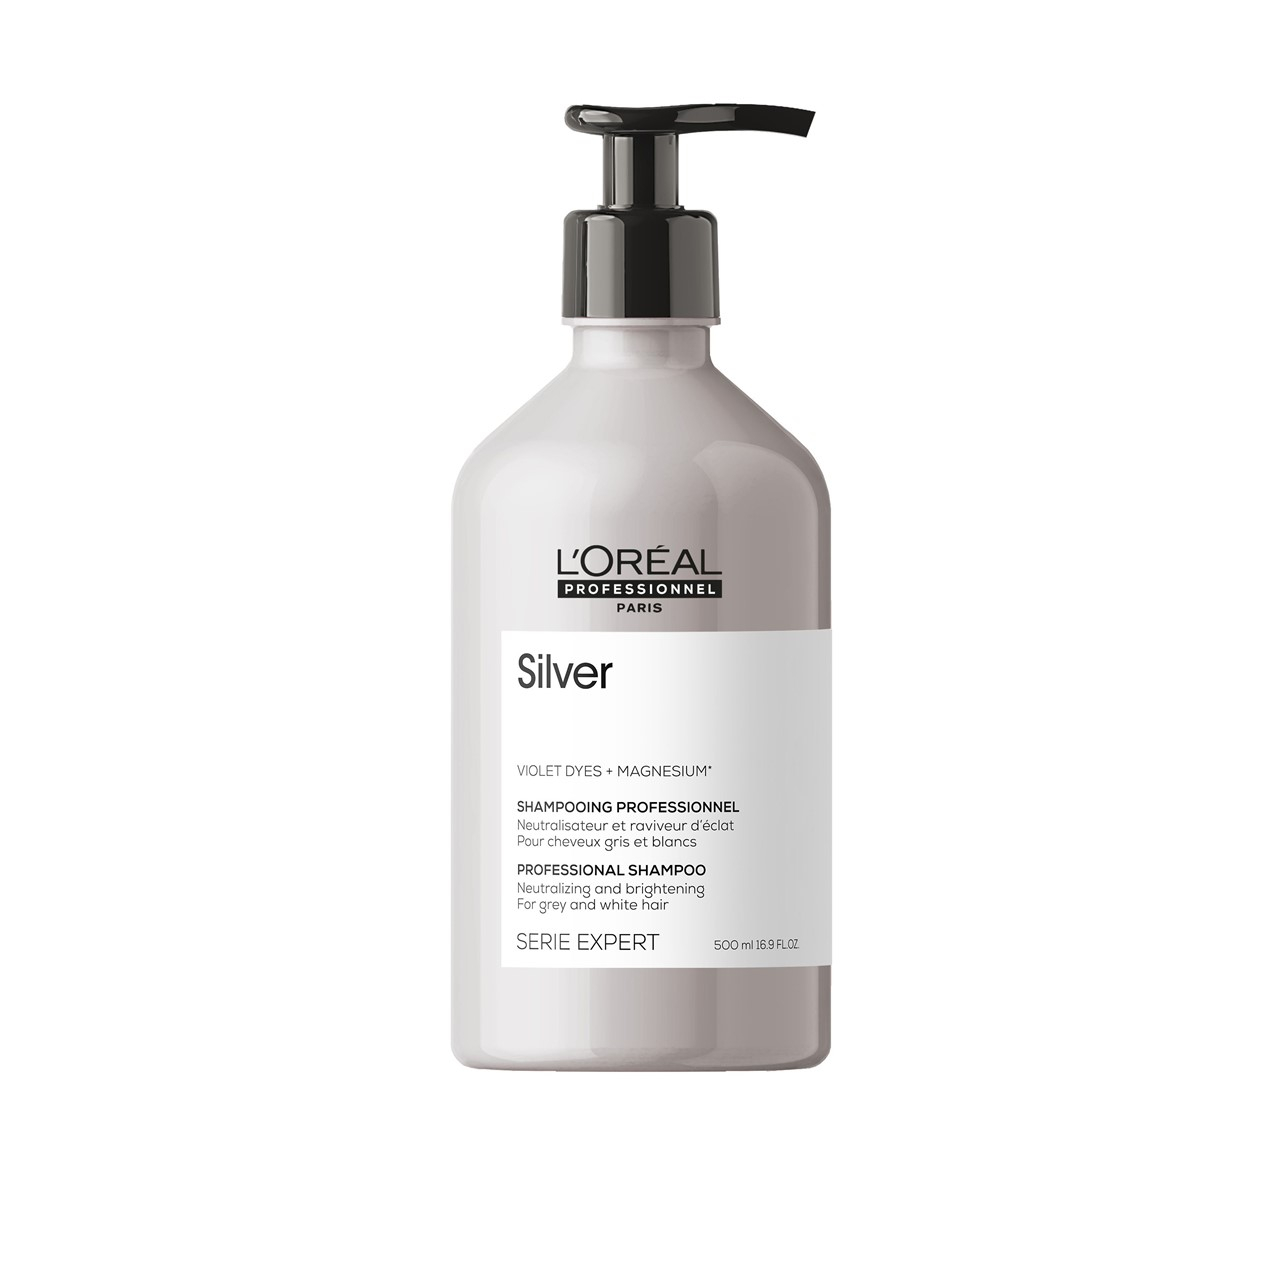 L'Oréal Professionnel Série Expert Silver Shampoo 500ml (16.91fl oz)